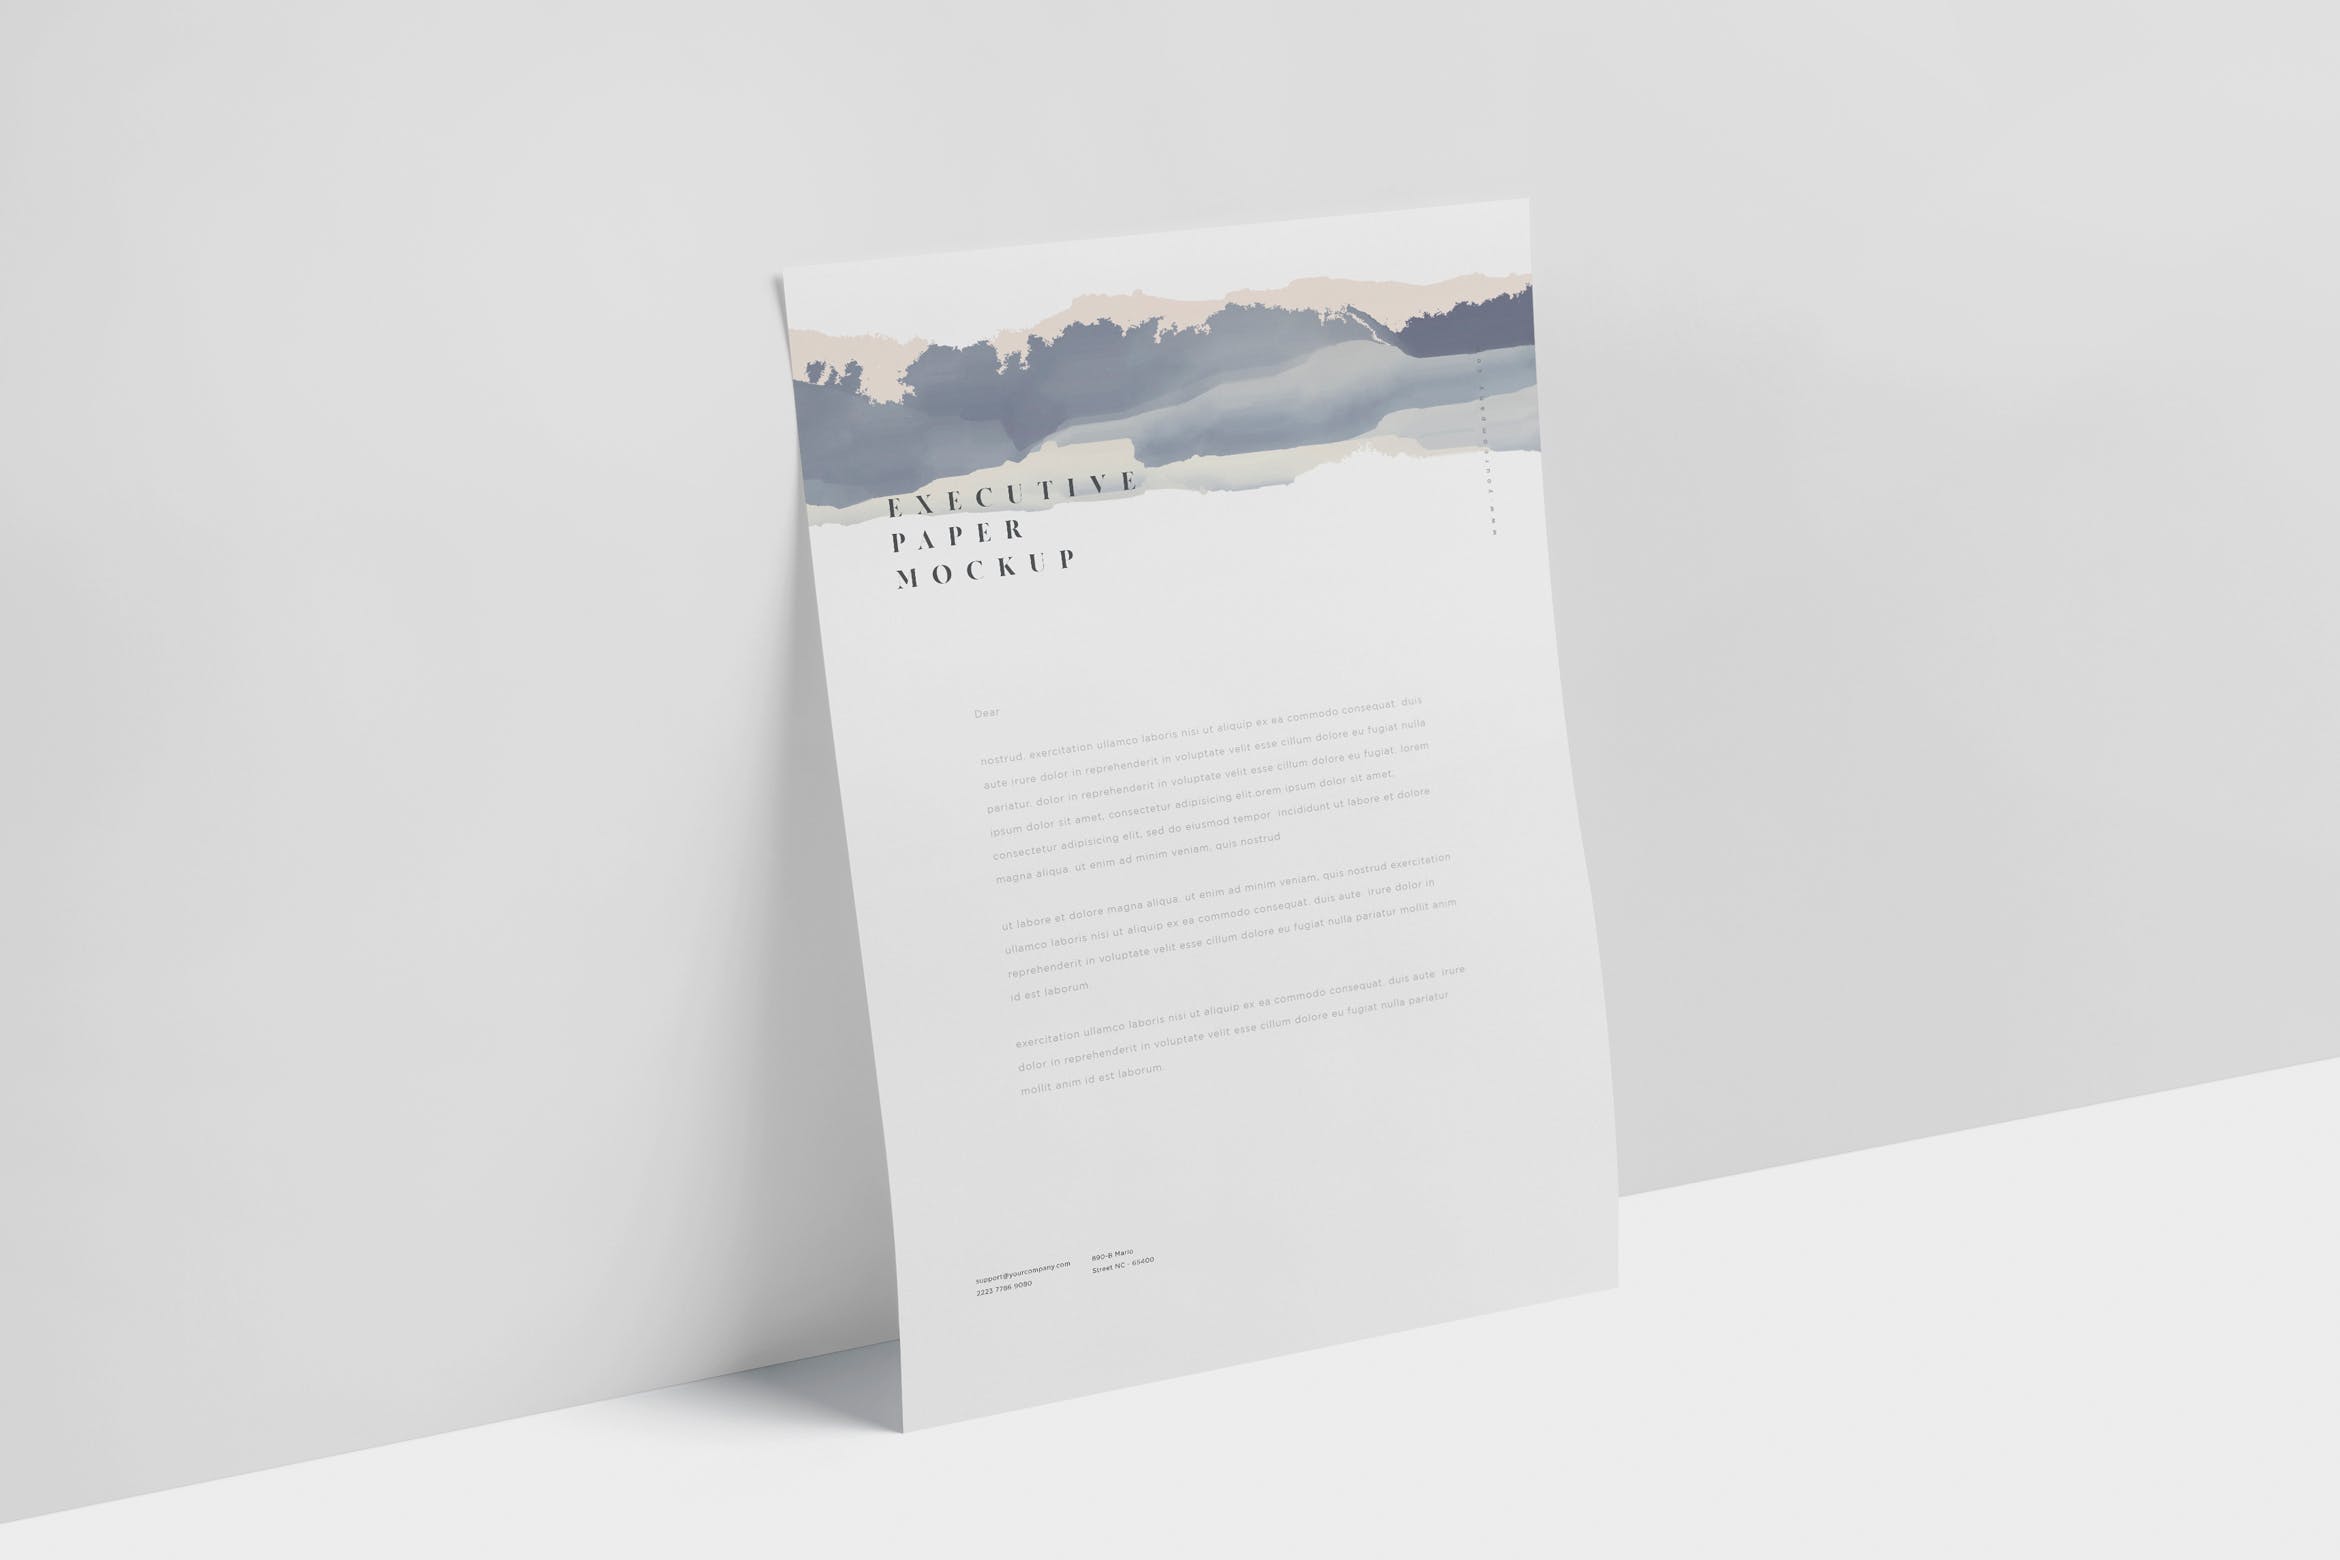 企业宣传单张设计效果图样机16图库精选 Executive Paper Mockup – 7×10 Inch Size插图